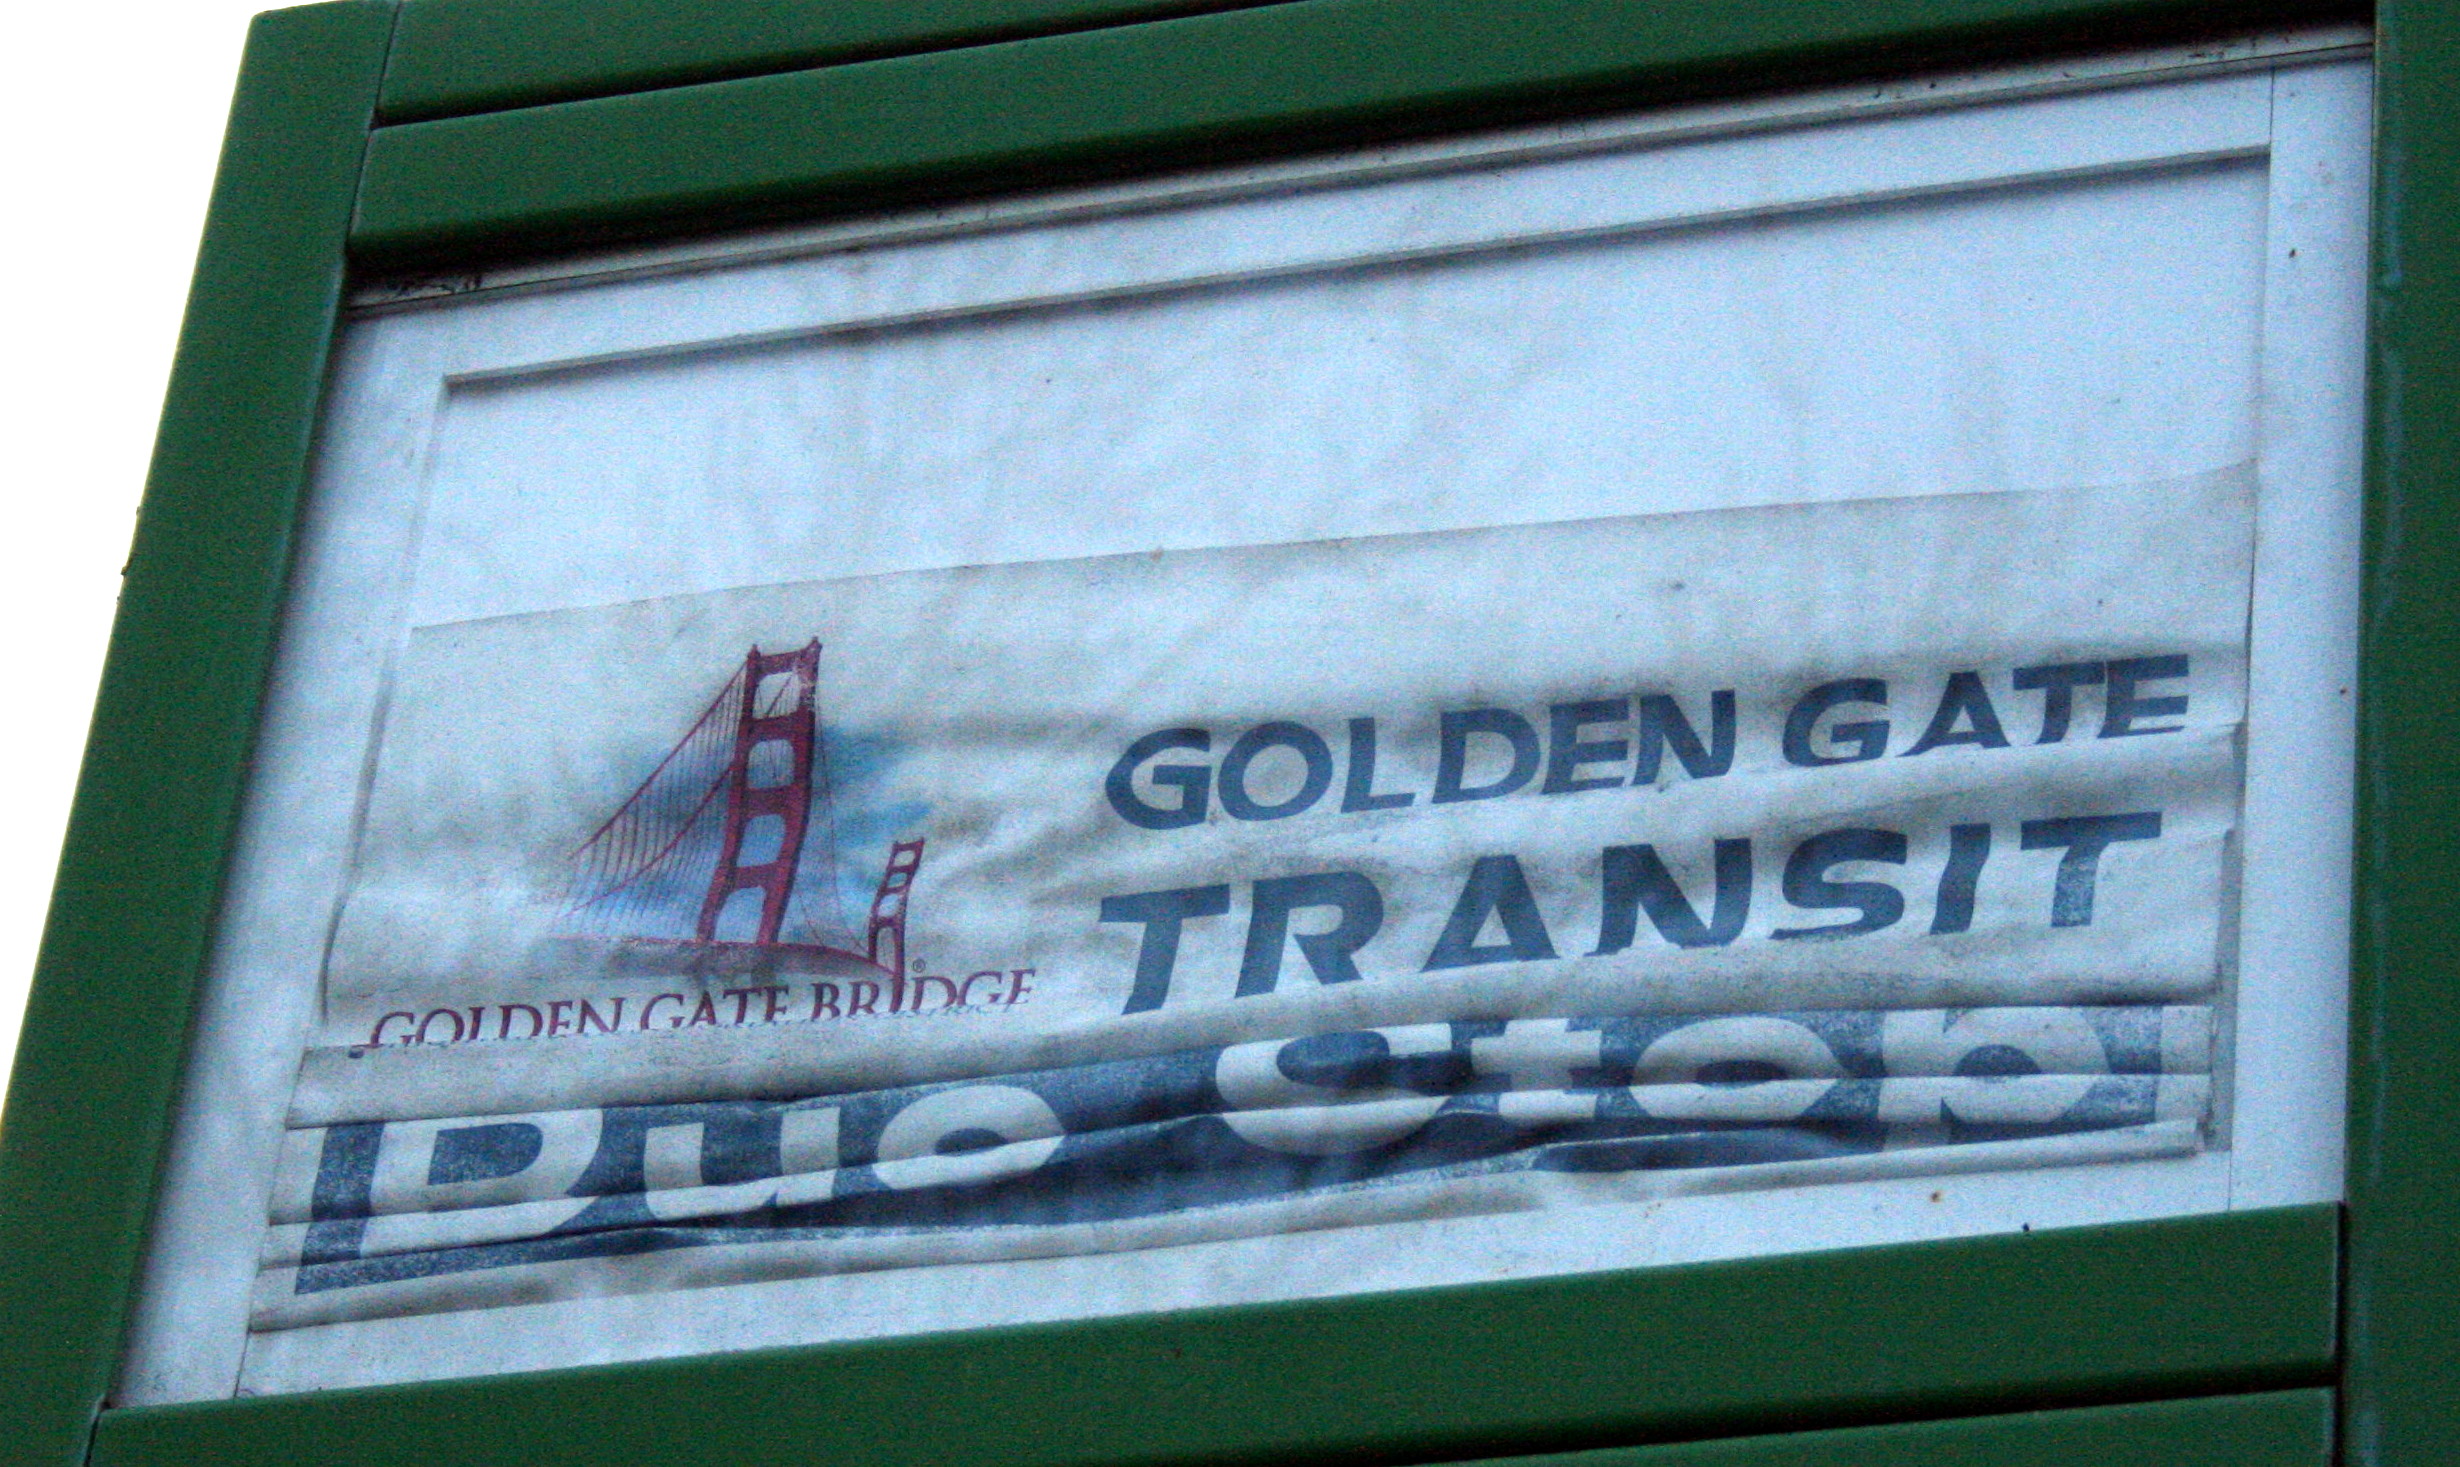 golden gate transit clipper card